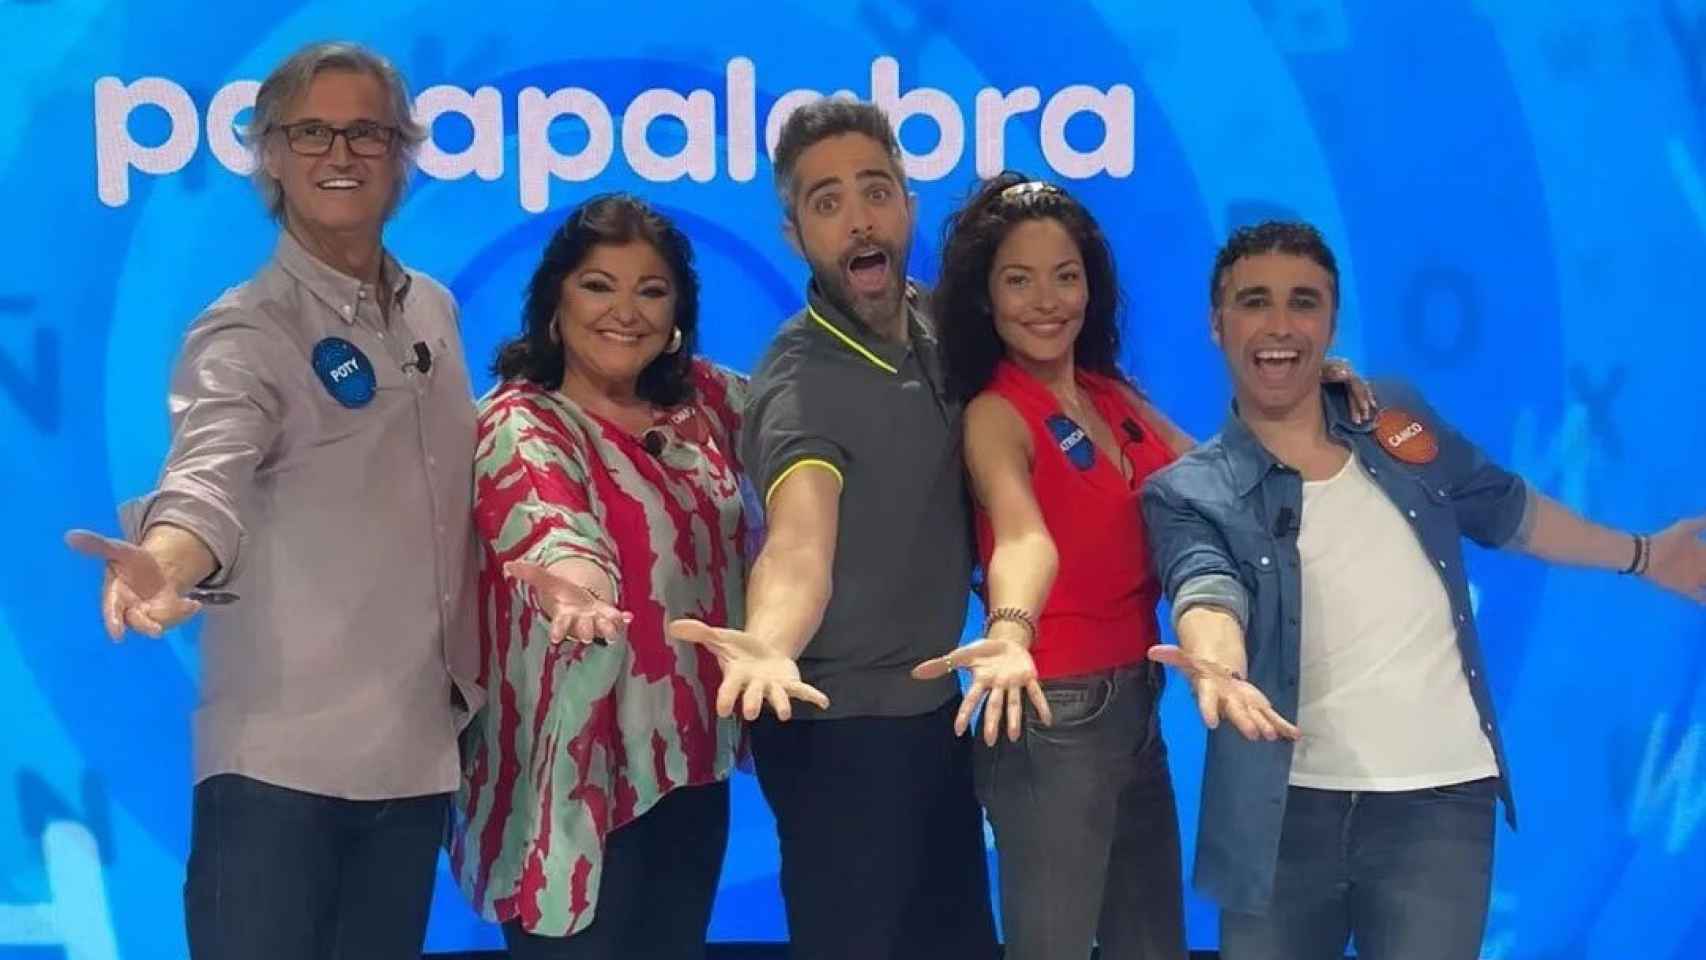 'Pasapalabra': Quiénes son los invitados de hoy Poty, Charo Reina, Patricia Pérez y Canco Rodríguez